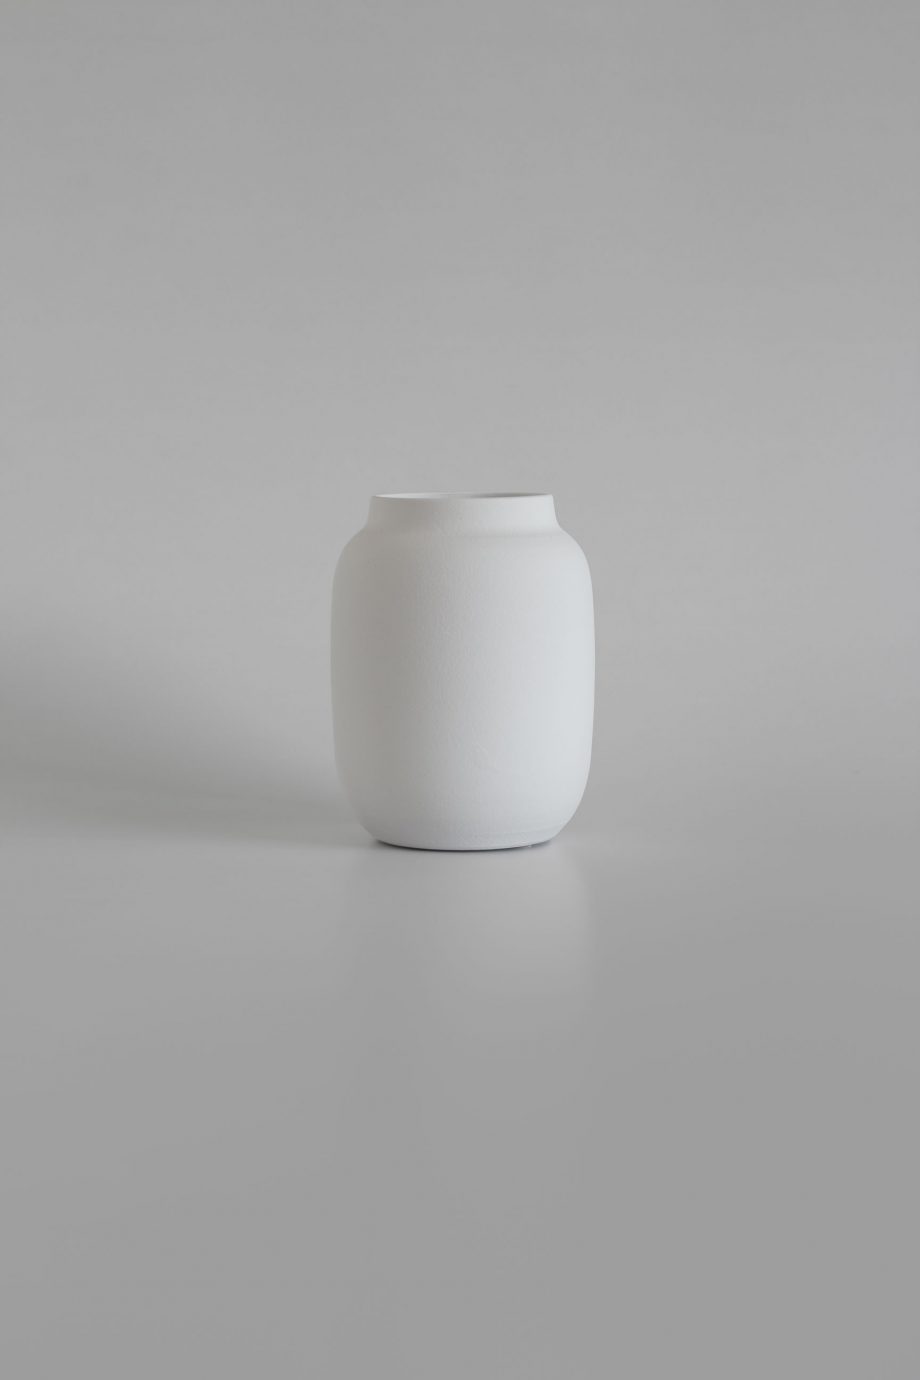 Dekorative weiße Vase von der portugiesischen Handwerksmarke o cactuu.